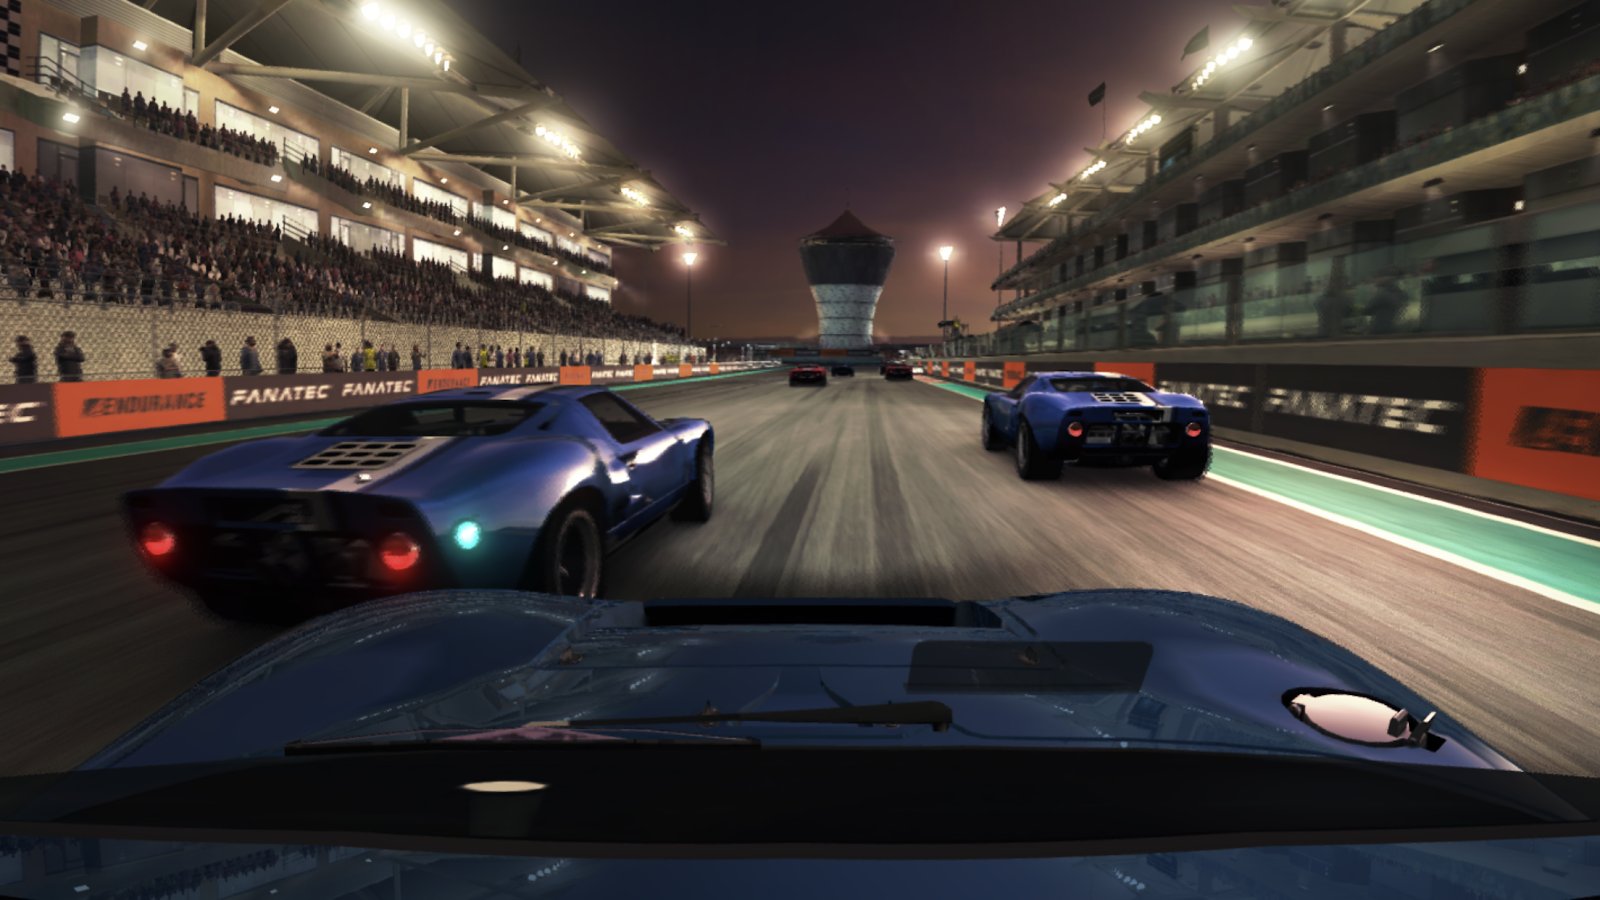 720p grid autosport image